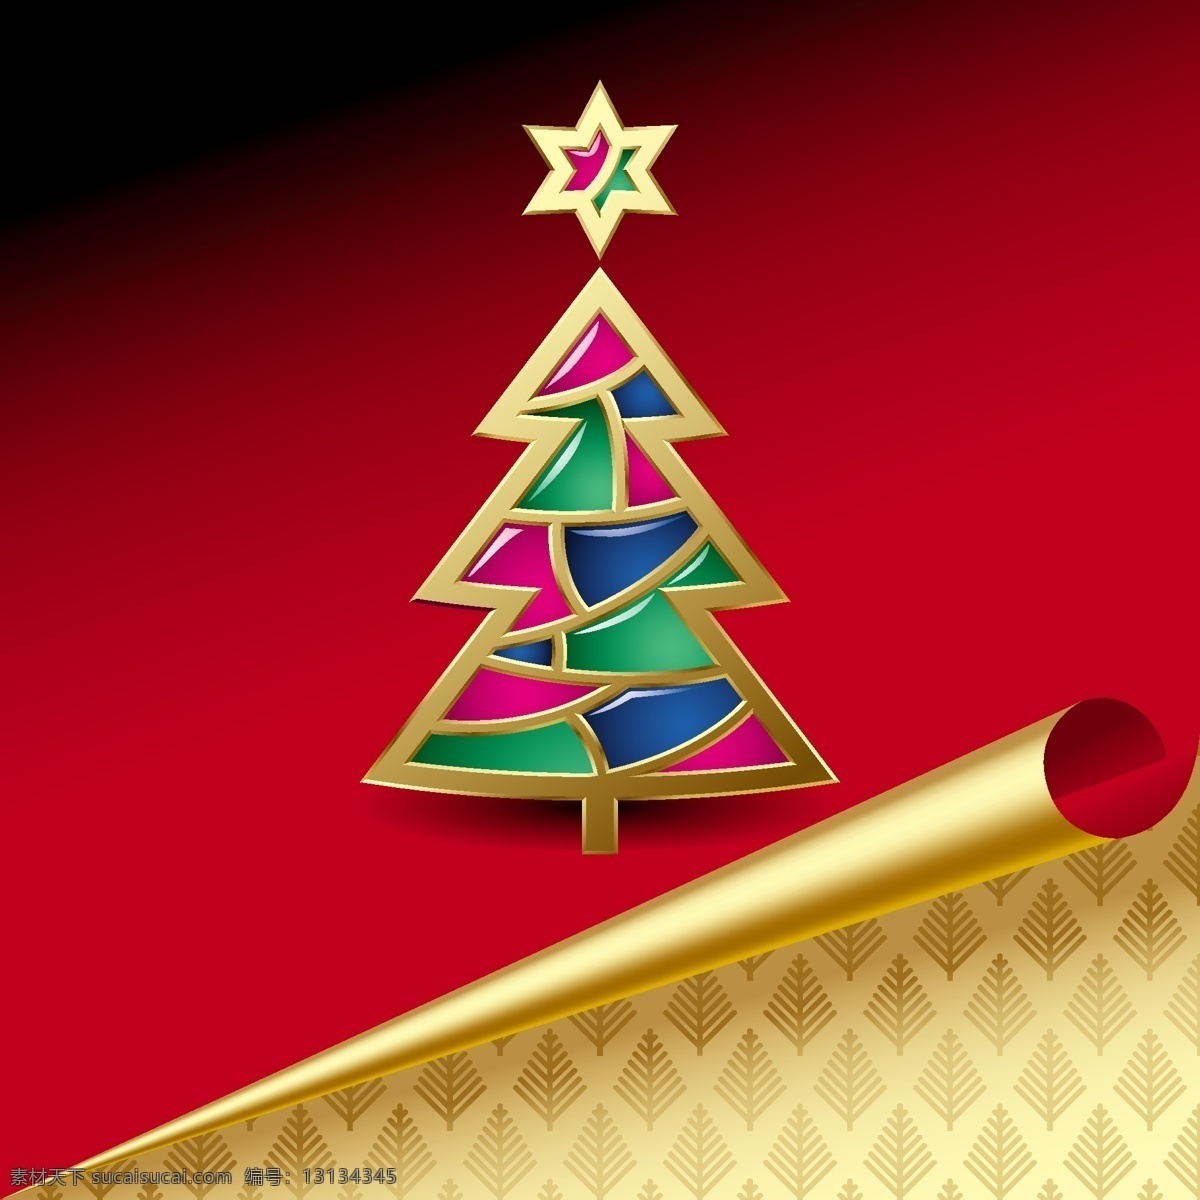 摘要 玻璃 圣诞树 背景 web 彩色玻璃 插画 创意 高分辨率 角 接口 免费 病 媒 生物 时尚 独特的 原始的 高质量 图形 质量 新鲜的 设计新的 ui元素 hd 元素 详细的 红色的 金 圣诞节 弯曲的角 卷曲的 摘要树 明星 丰富多彩 psd源文件